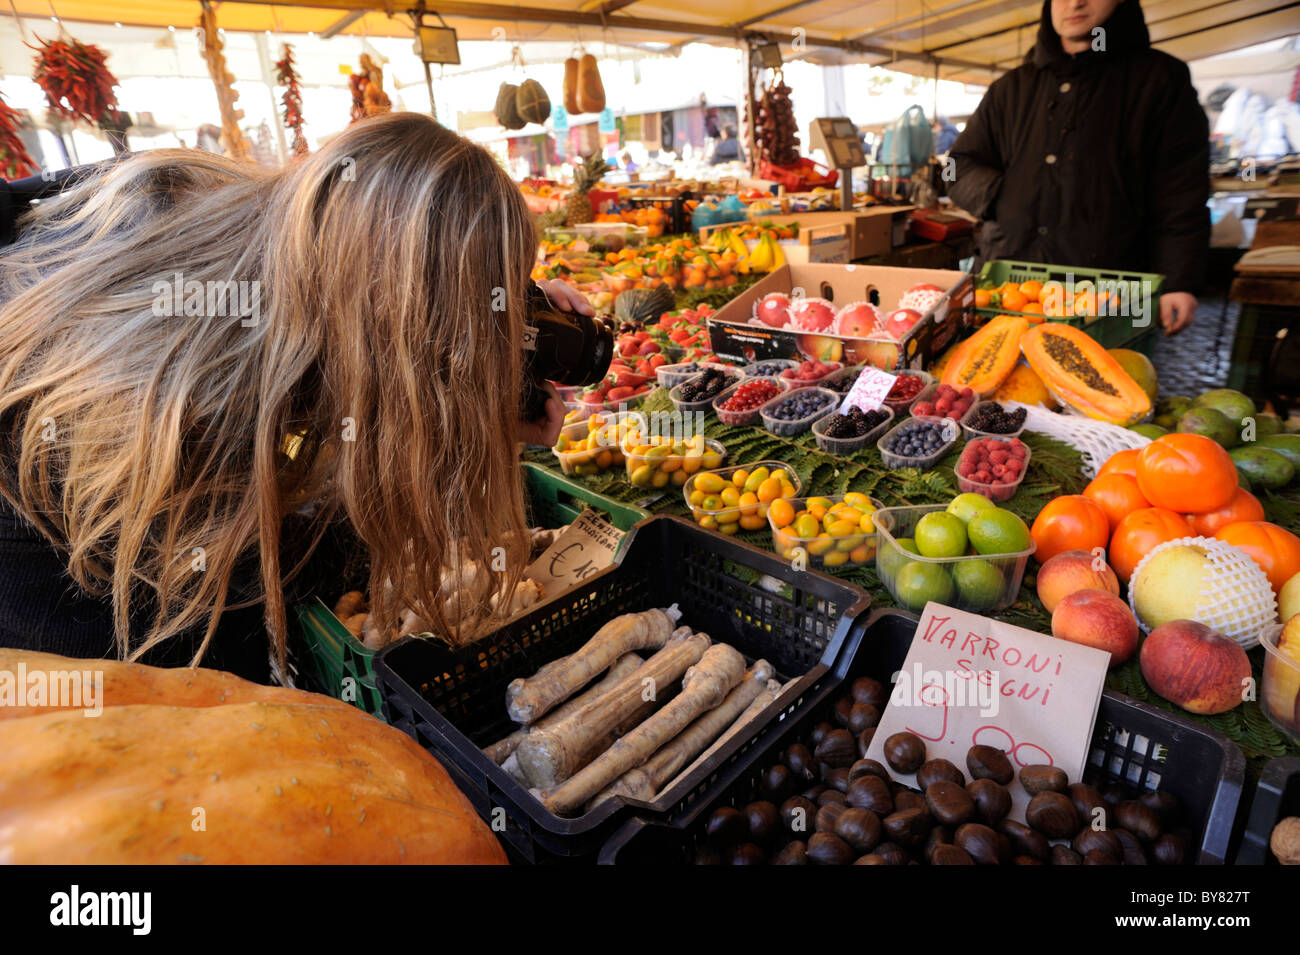 Italia, Roma, campo de' Fiori, puestos de mercado, niña tomando fotografías de los alimentos Foto de stock